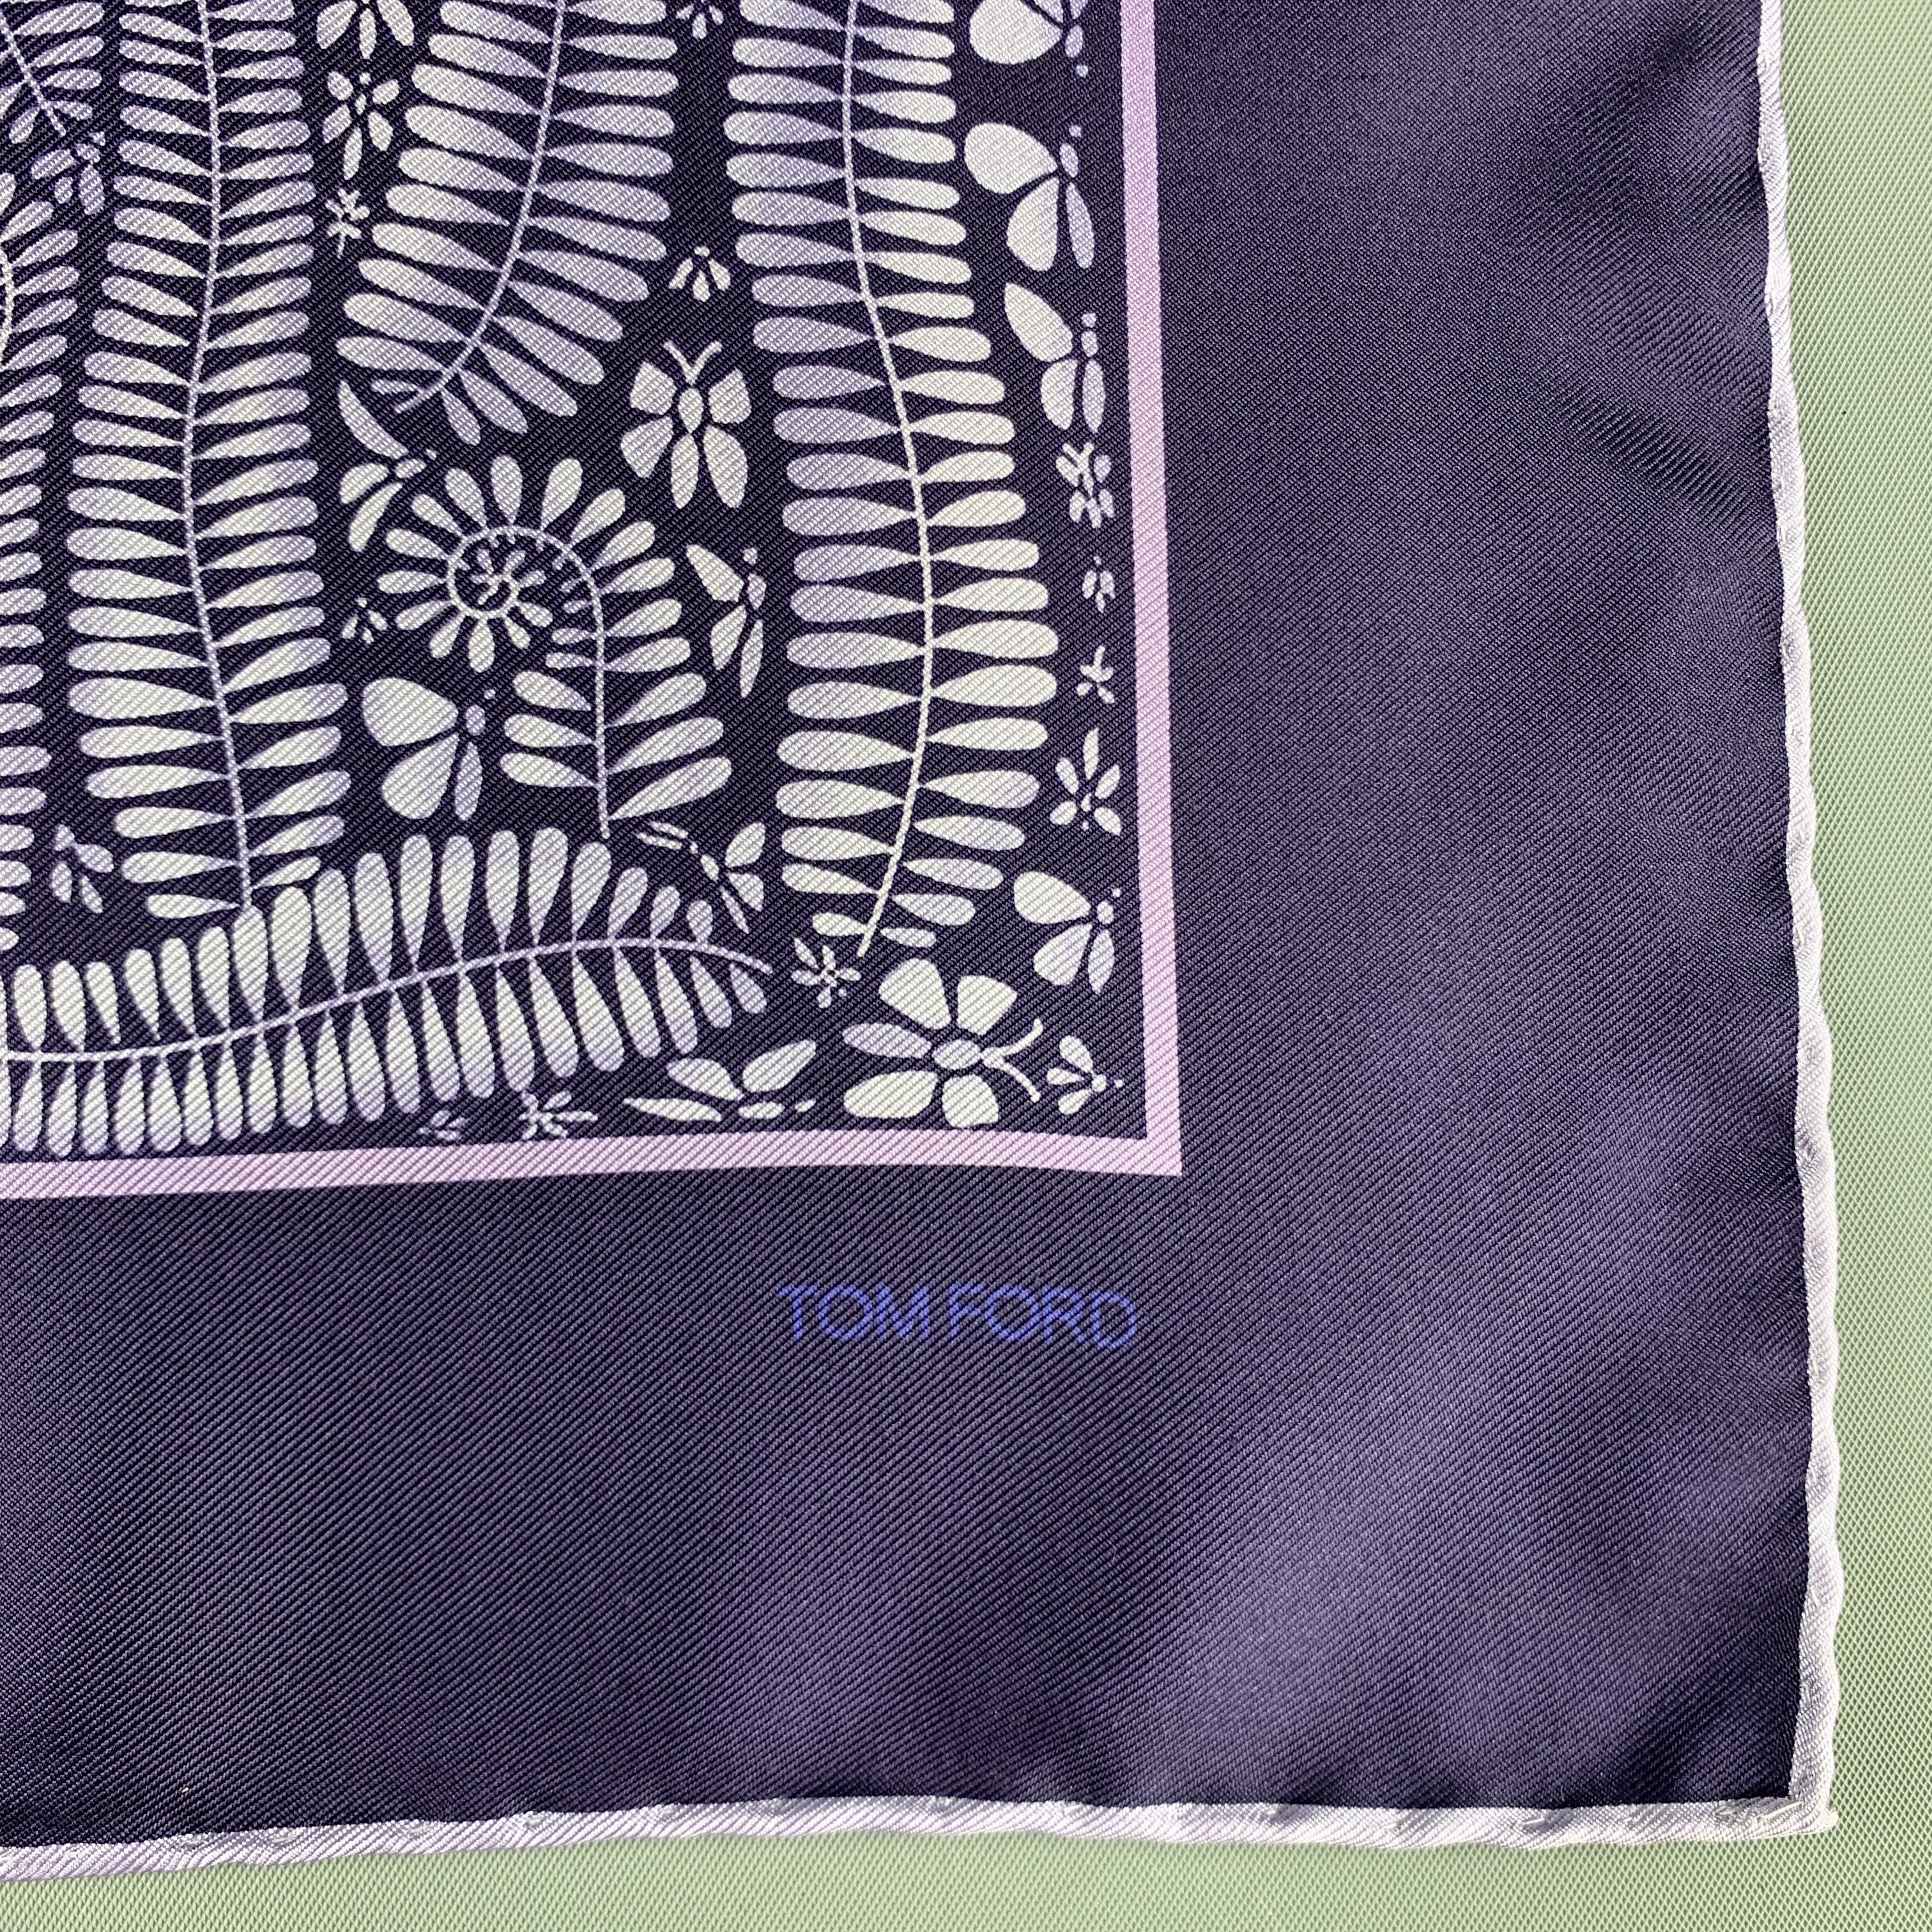 Black TOM FORD Purple Leaves Print Silk Pocket Square